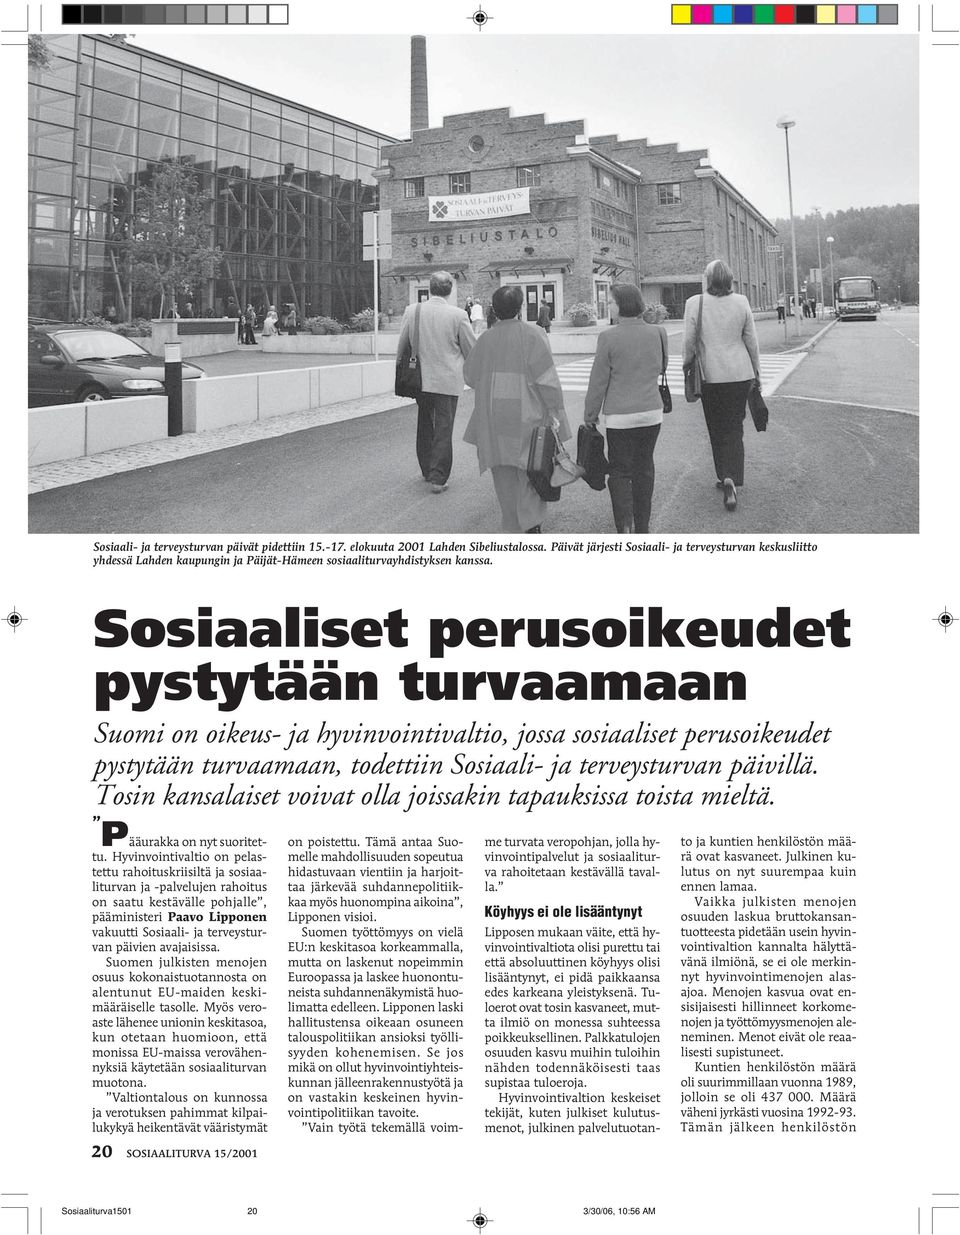 Sosiaaliset perusoikeudet pystytään turvaamaan Suomi on oikeus- ja hyvinvointivaltio, jossa sosiaaliset perusoikeudet pystytään turvaamaan, todettiin Sosiaali- ja terveysturvan päivillä.